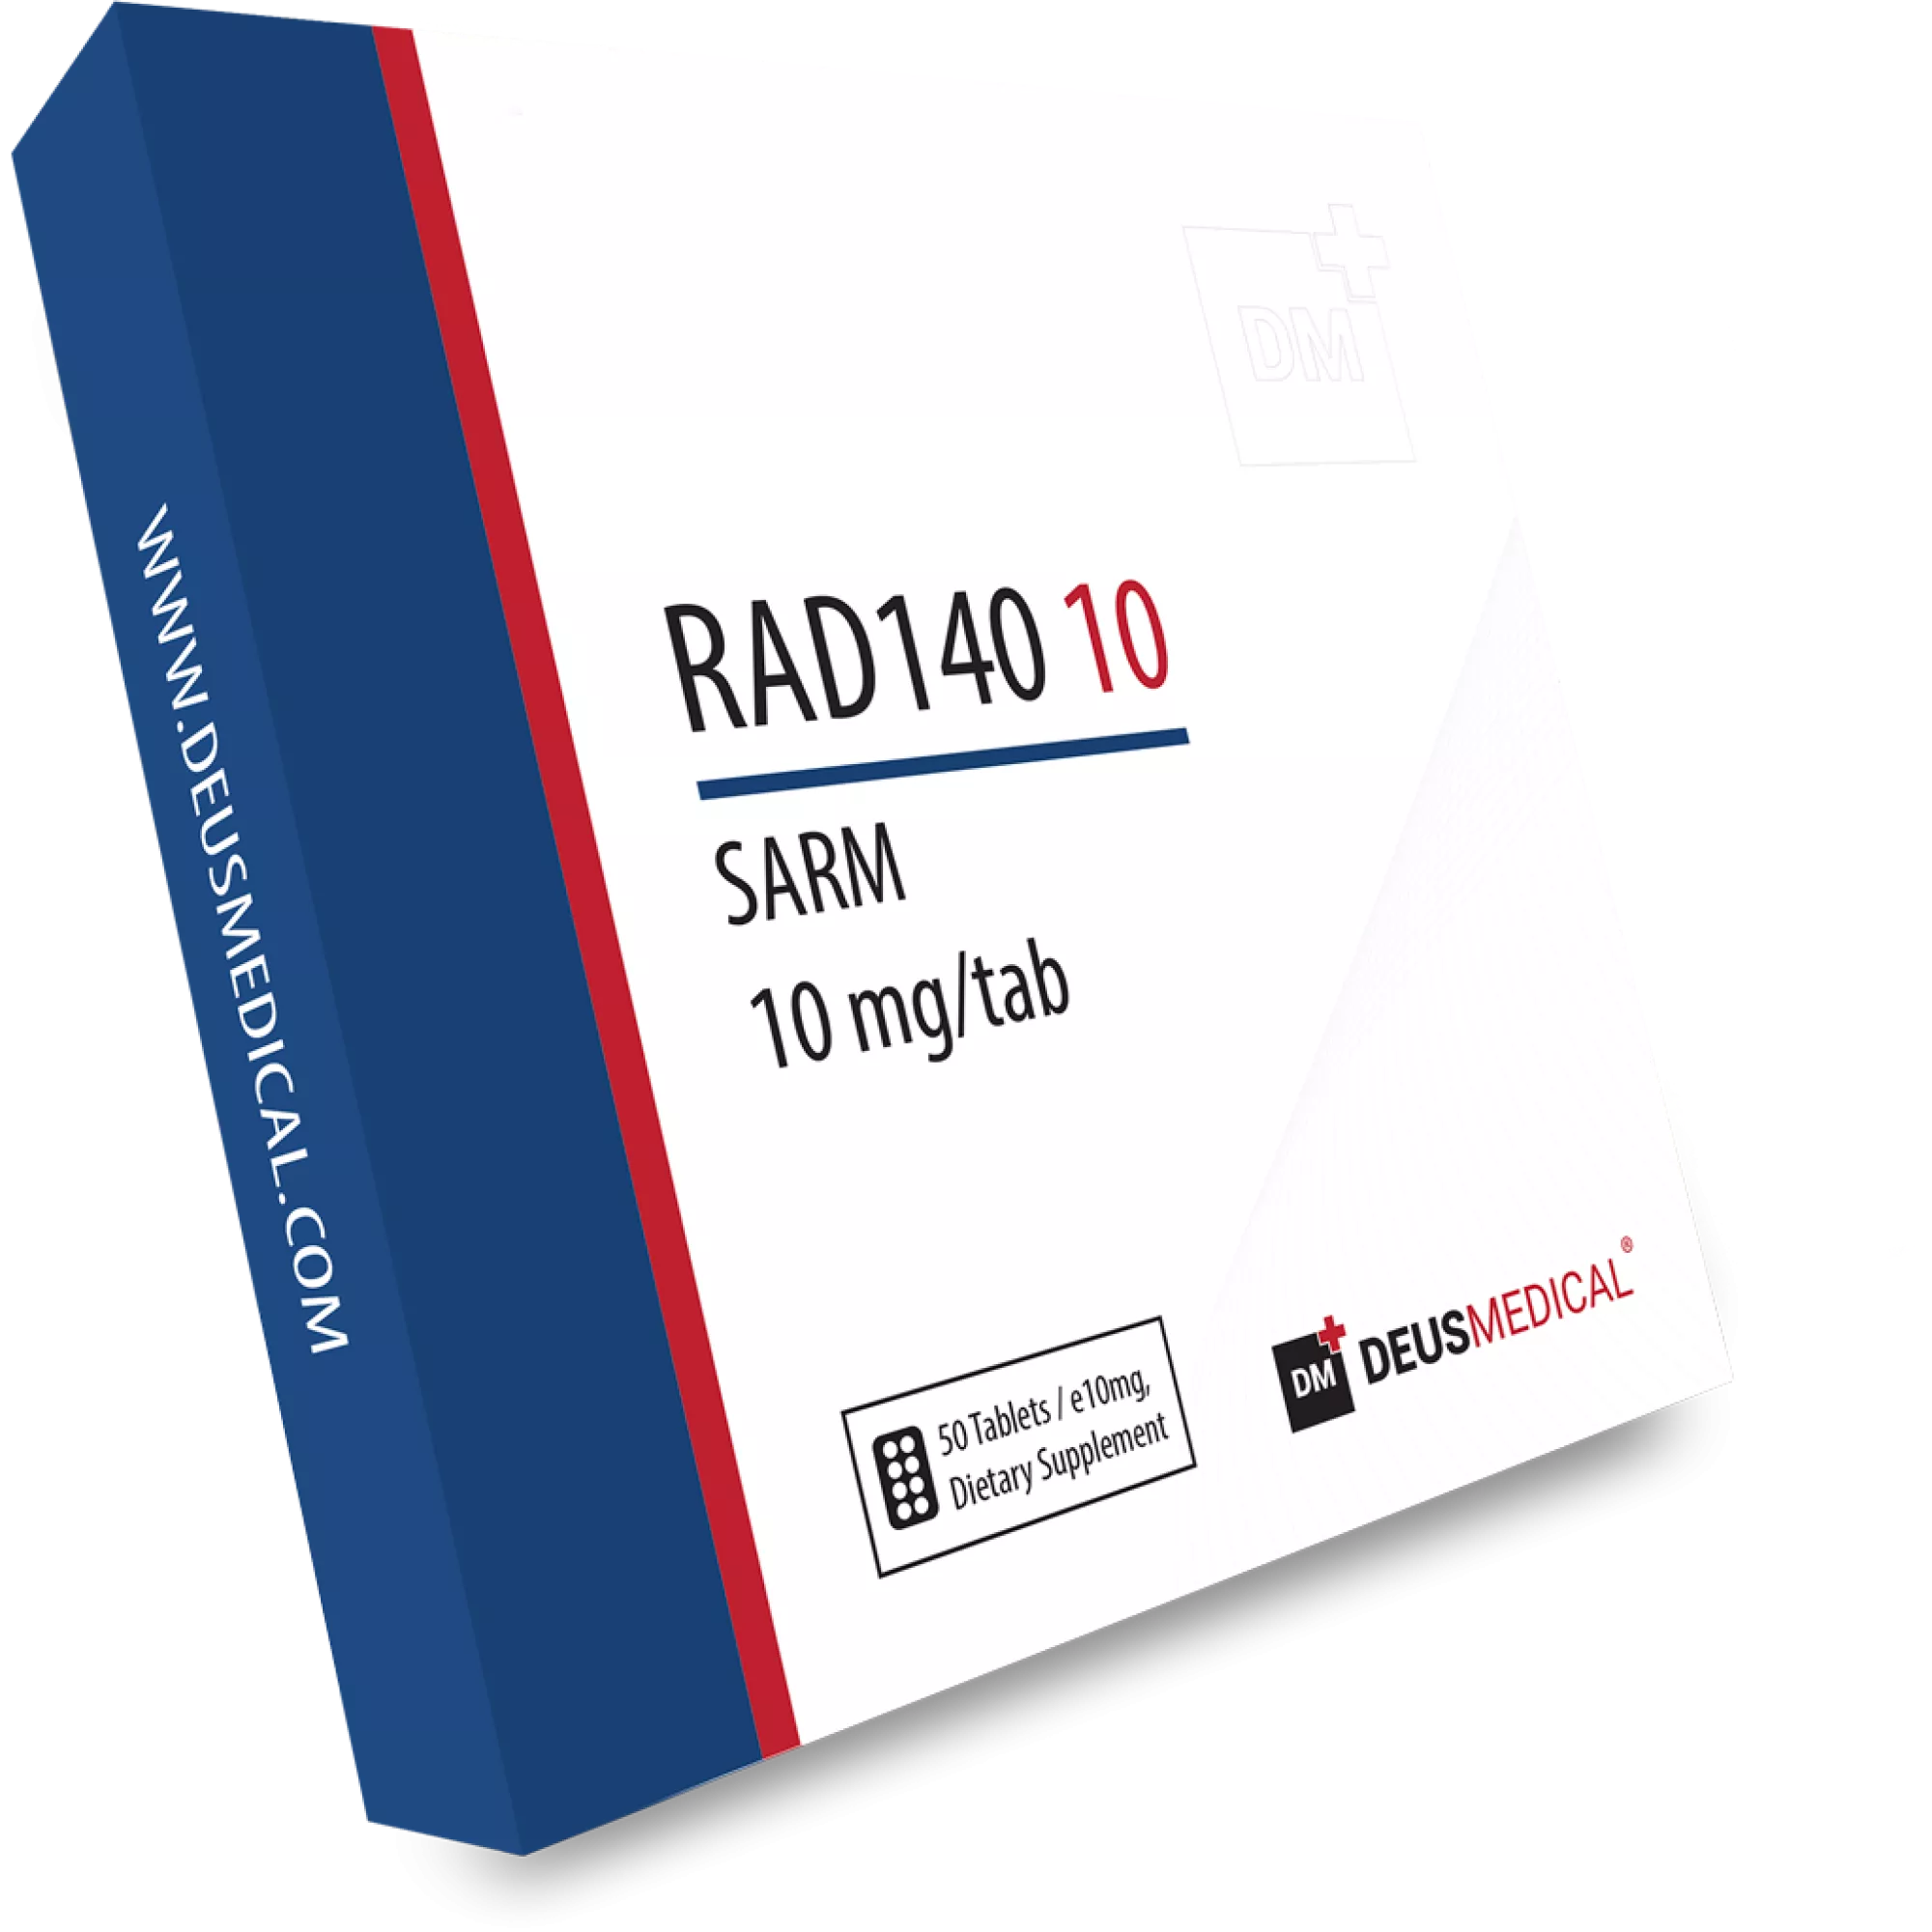 RAD140 10 (Testolone), Deus Medical, Koupit steroidy online – www.deuspower.shop